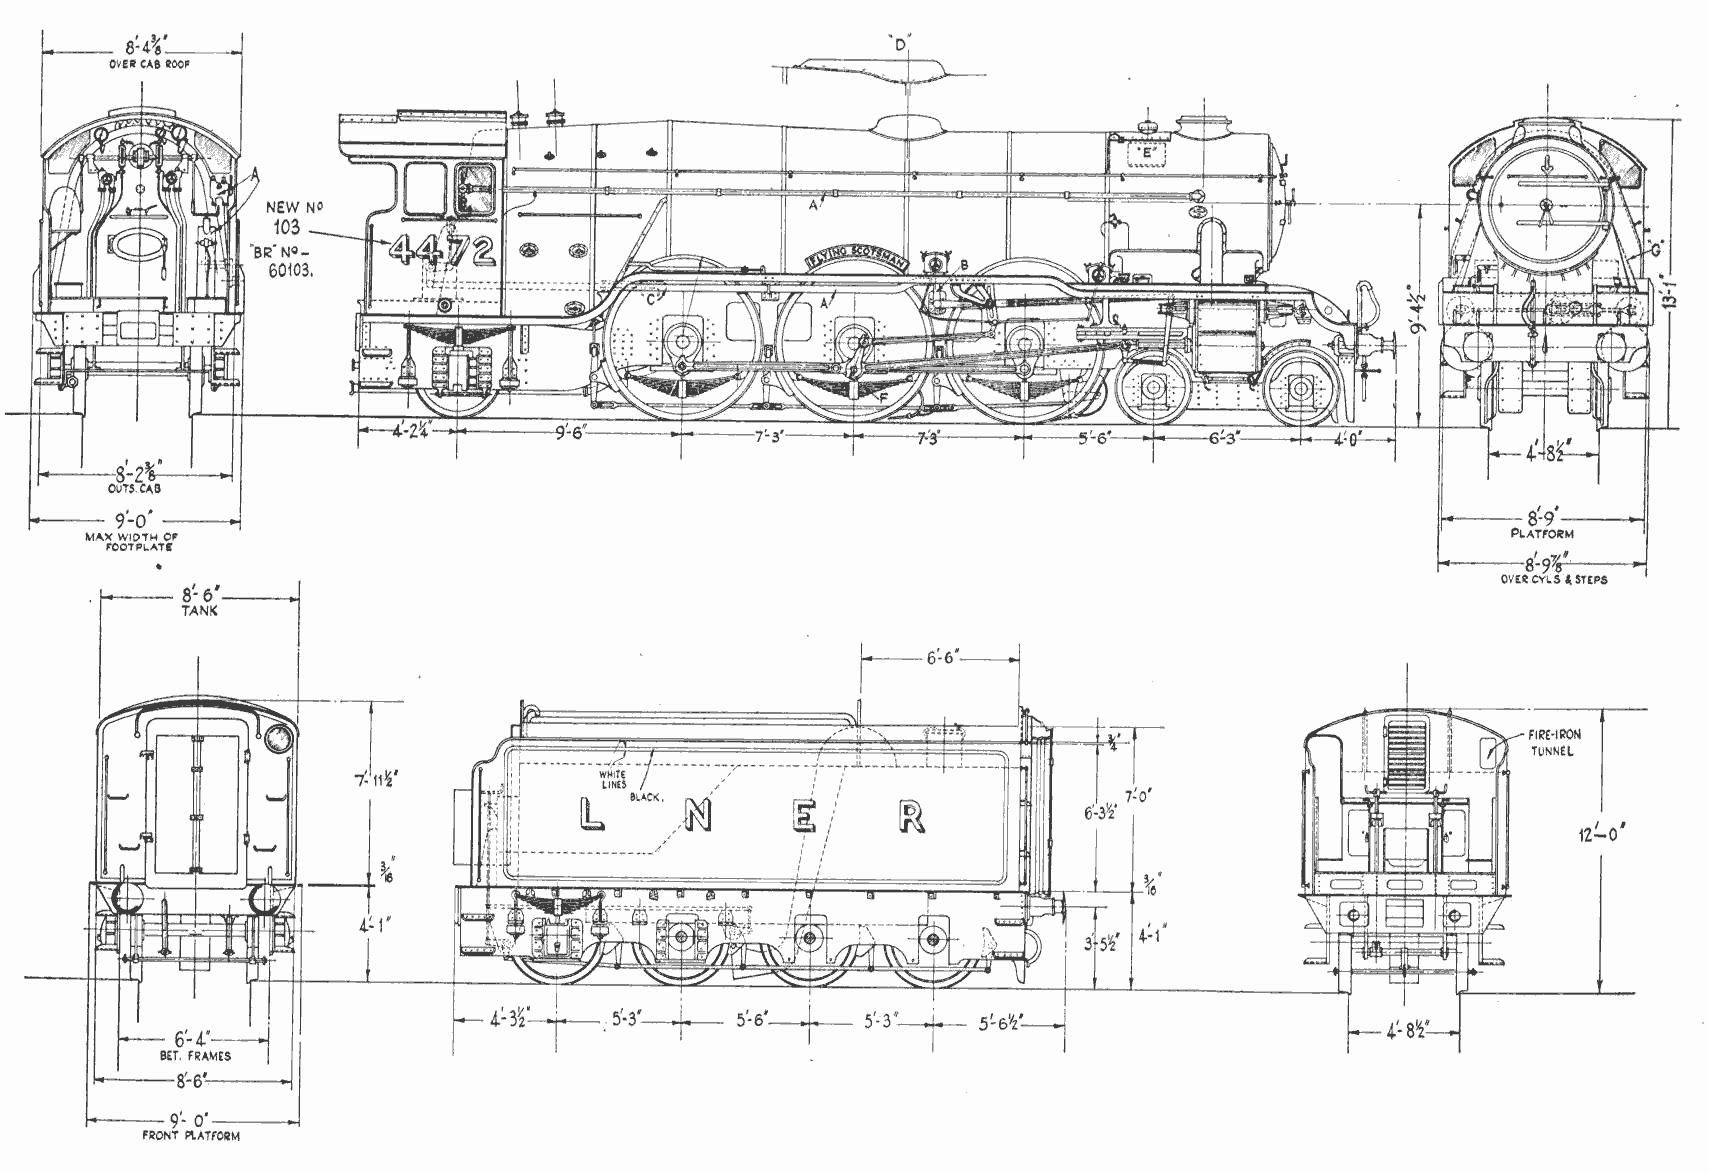 LNER Class A3 4472 Flying Scotsman blueprint